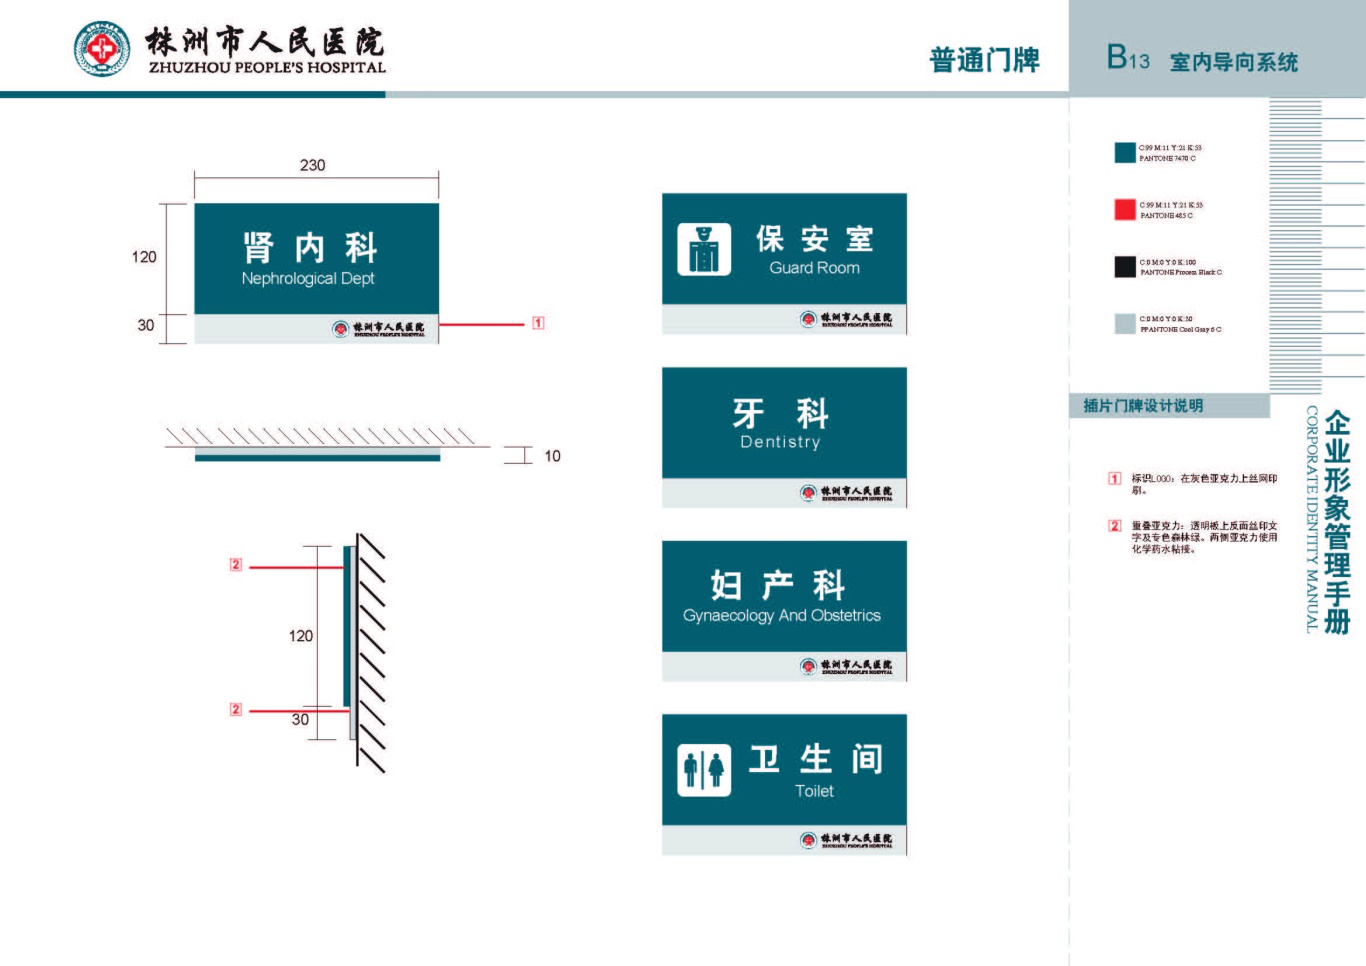 株洲市人民医院vis手册设计项目图24